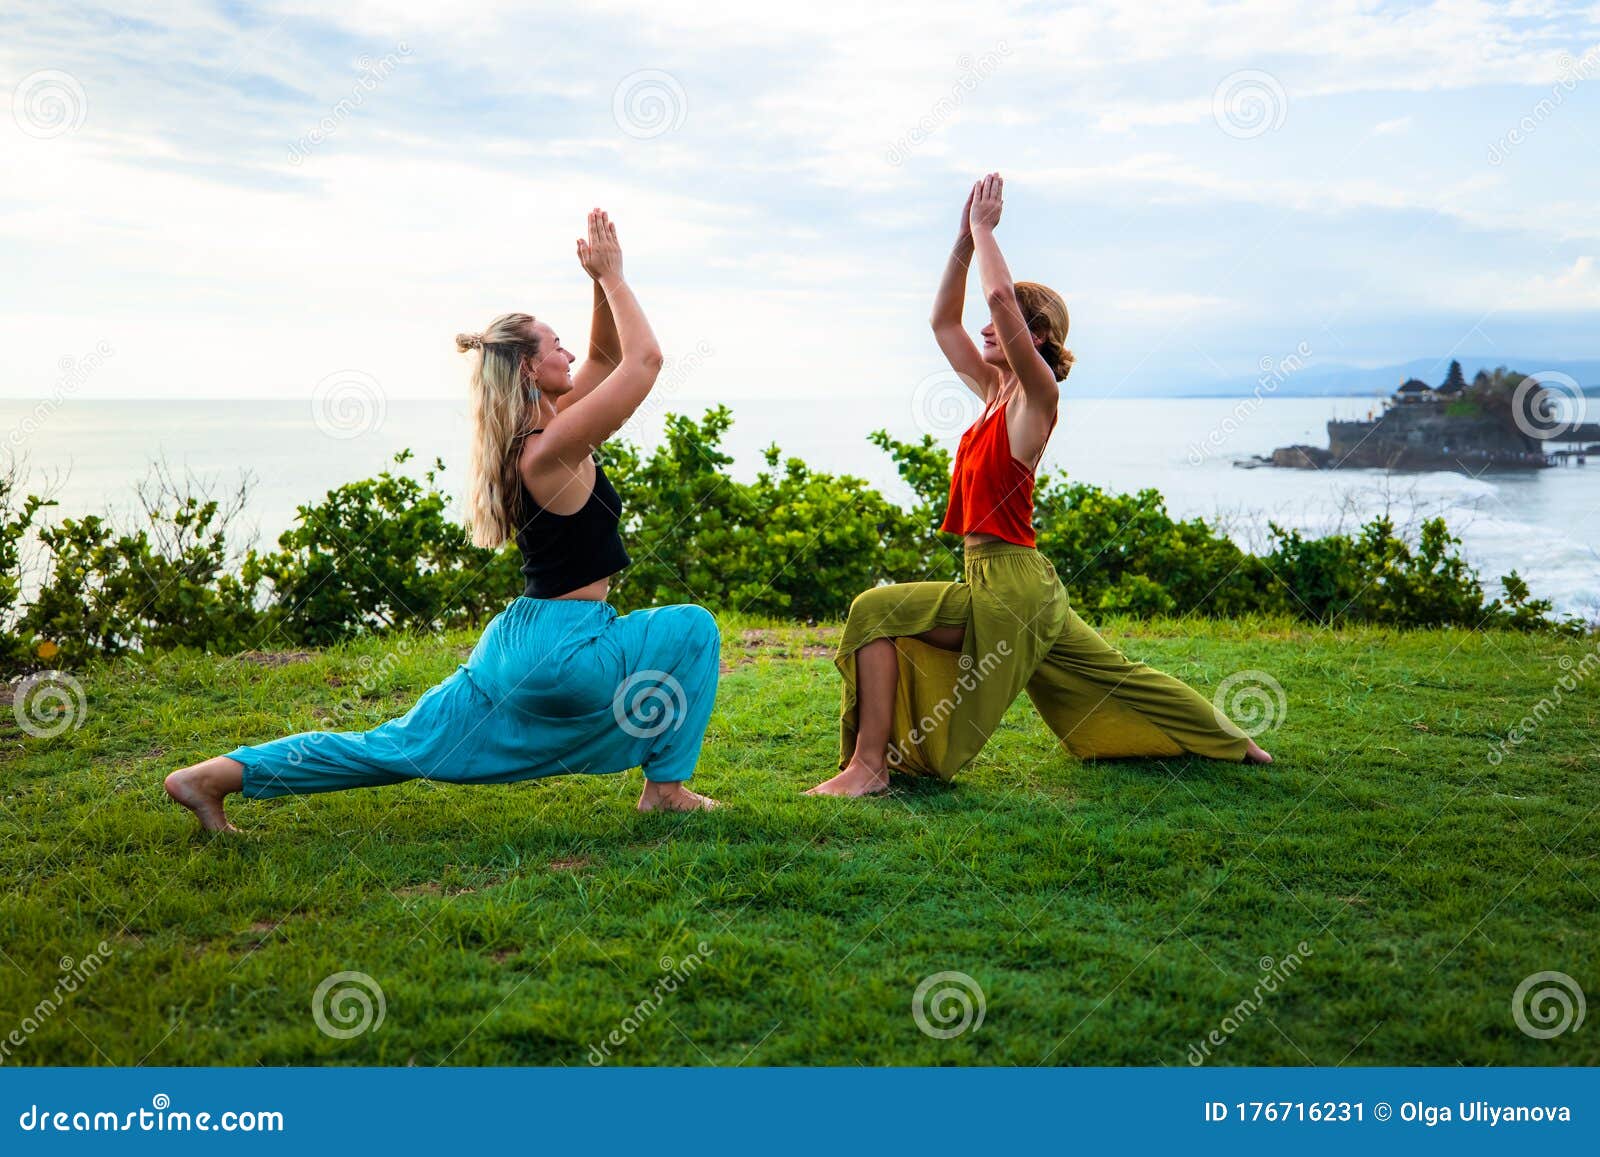 Yoga Day 2023: Surya Namaskar Poses Step By Step